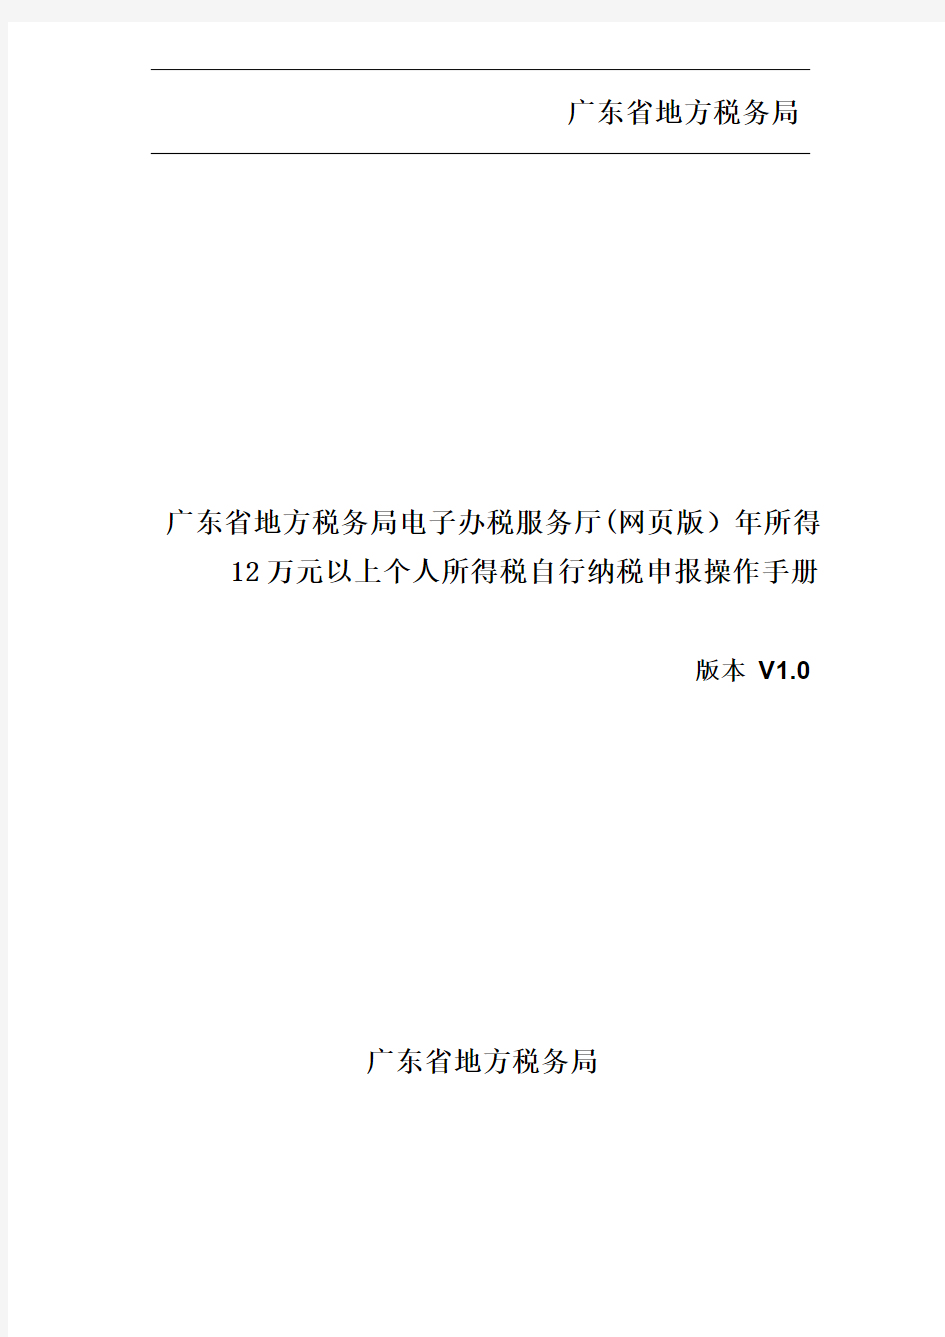 广东省地方税务局电子办税服务厅(网页版)操作手册_年所得12万以上个税自行纳税申报